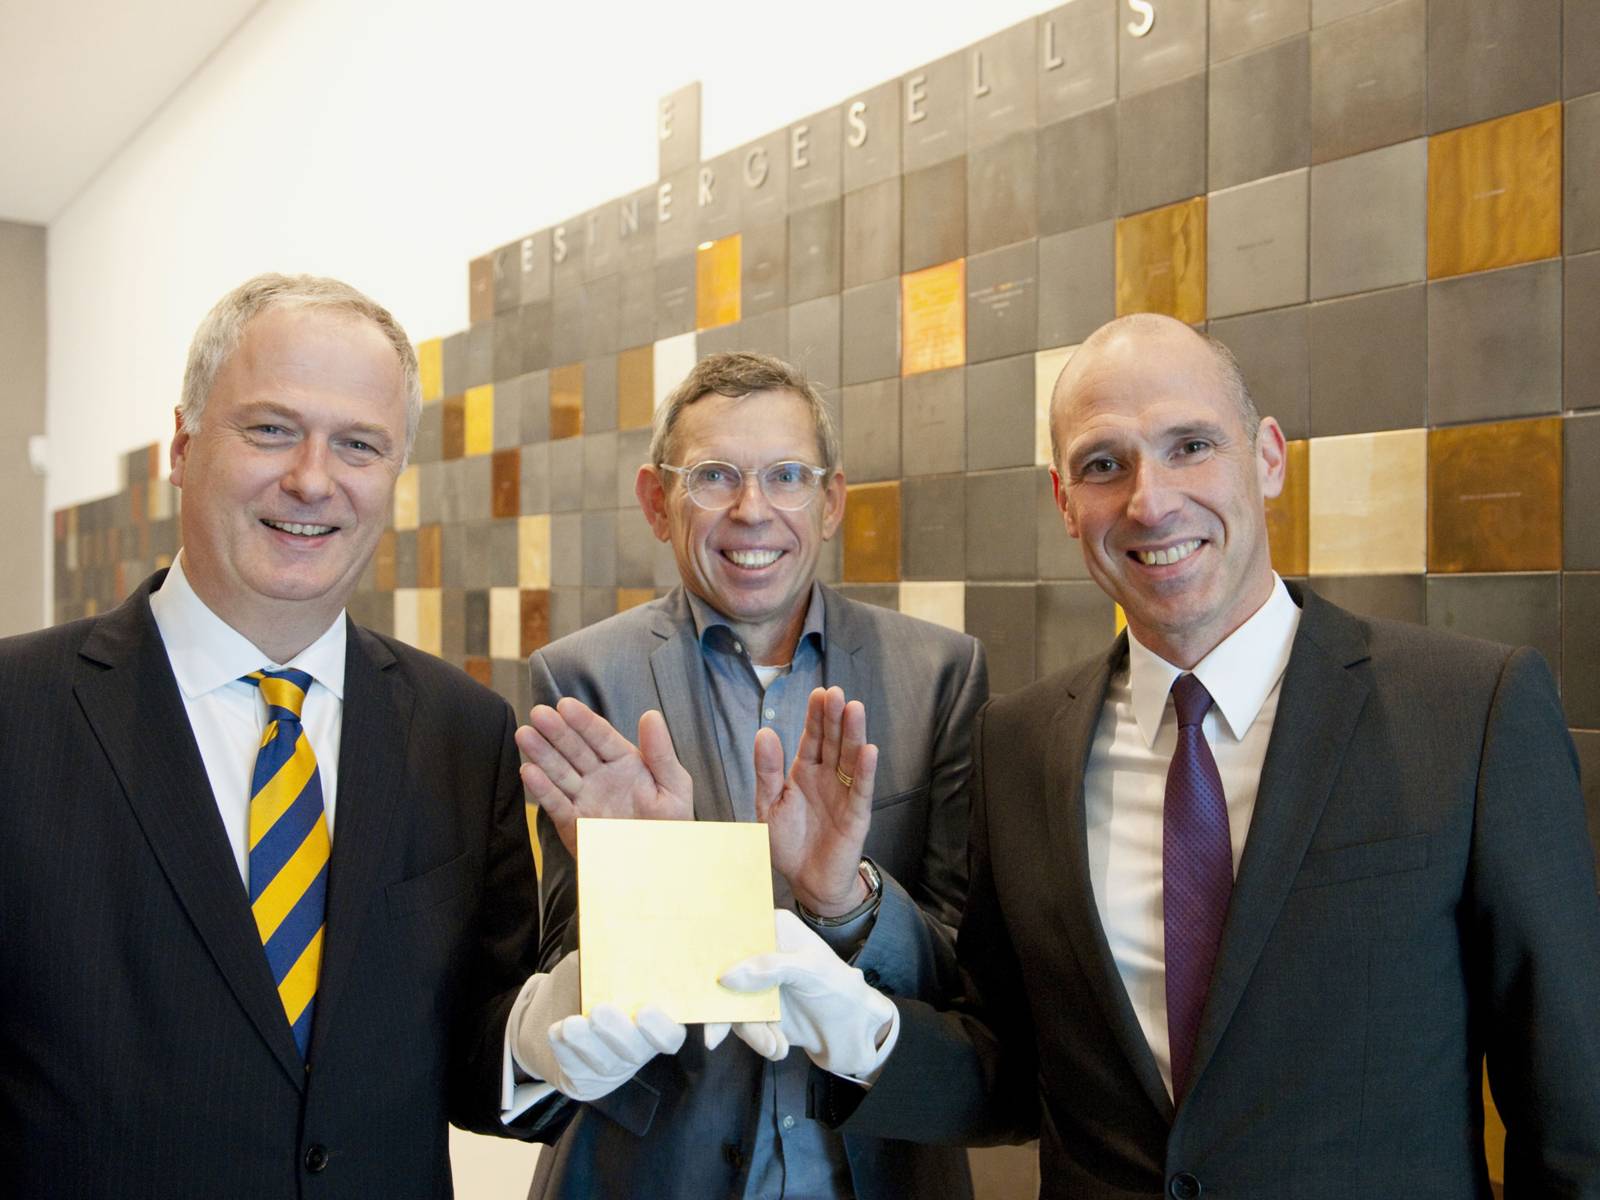 Bankvorstand Dr. David Lohmann (l.) und Nicolas Hoppe (r.) präsentieren gemeinsam mit Veit Görner (Mitte), scheidender Direktor der Kestnergesellschaft, die goldene Kachel.